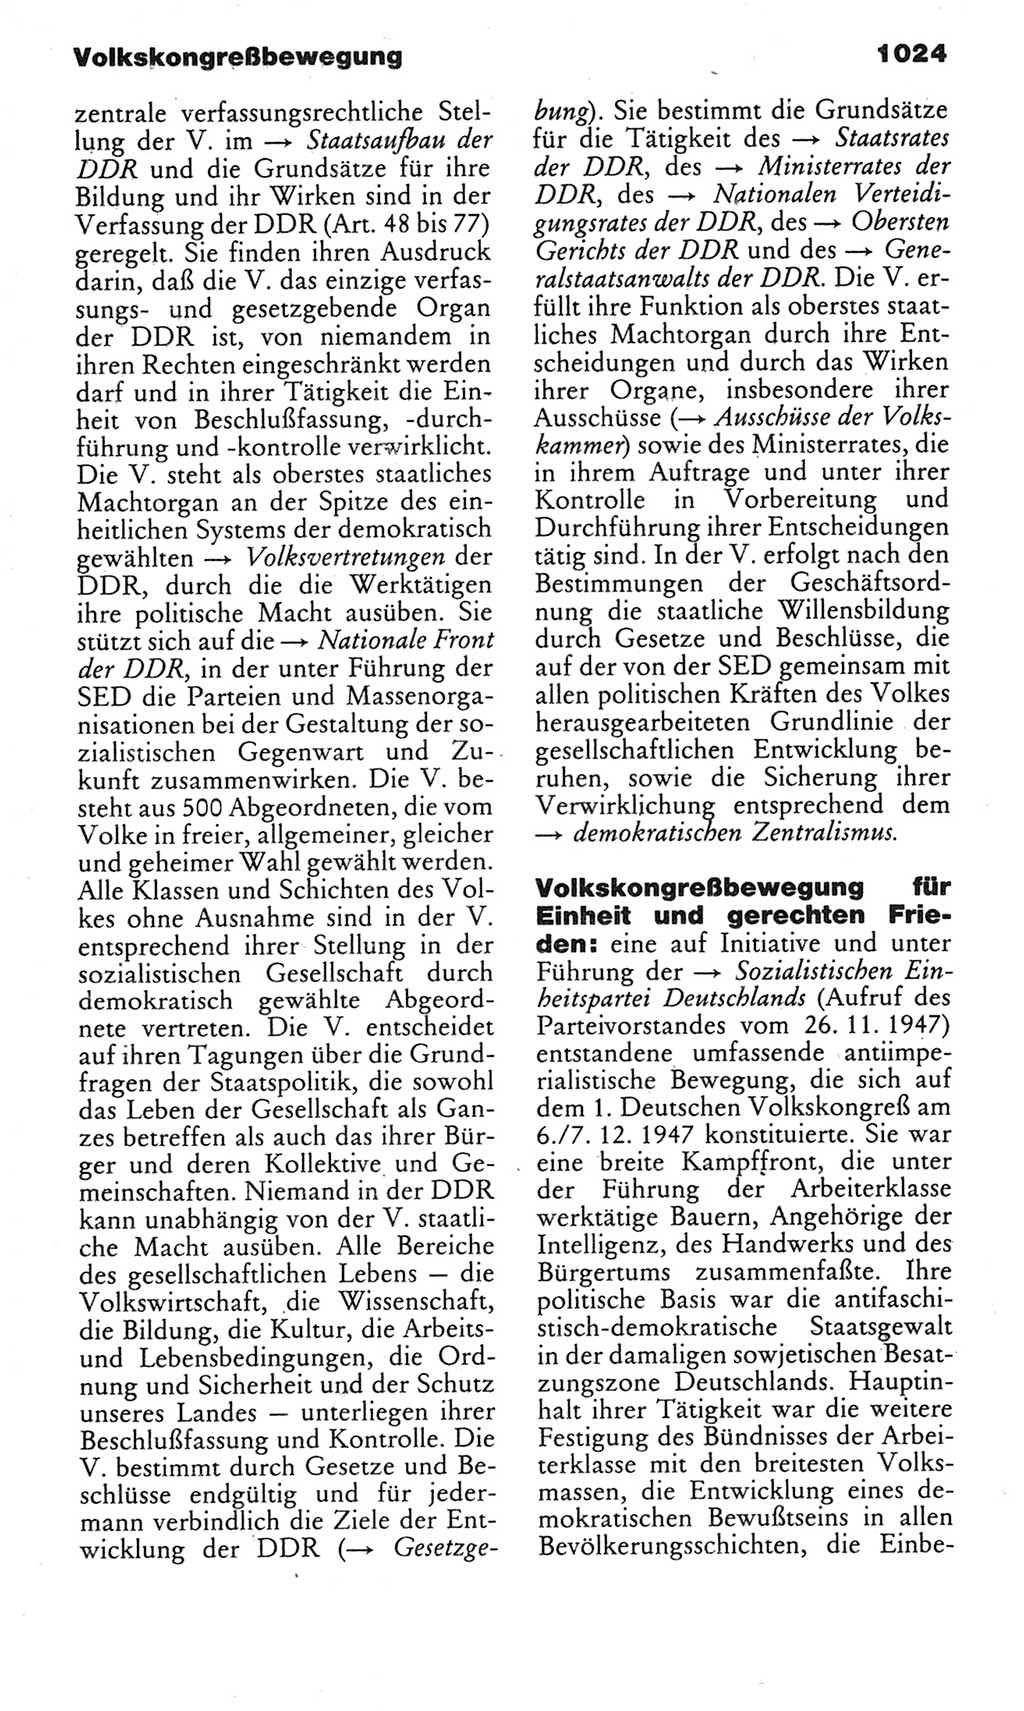 Kleines politisches Wörterbuch [Deutsche Demokratische Republik (DDR)] 1983, Seite 1024 (Kl. pol. Wb. DDR 1983, S. 1024)